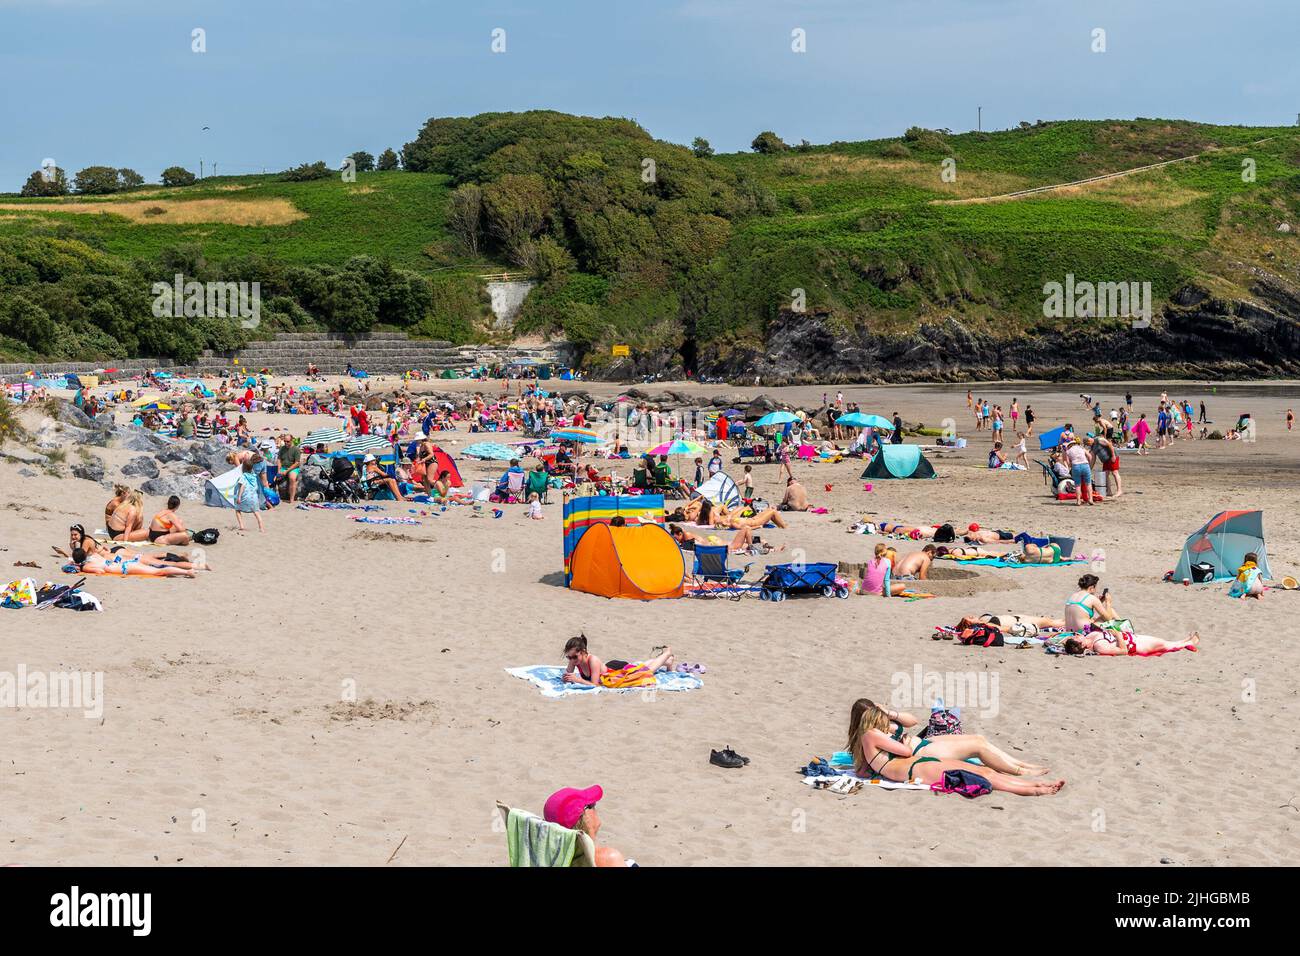 Rossarbery, West Cork, Irland. 18.. Juli 2022. Am Warren Beach in West Cork treffen heute die Temperaturen auf 28C. Touristen und Einheimische strömten zum Strand, um das Beste aus dem heißen Wetter zu machen. Quelle: AG News/Alamy Live News Stockfoto